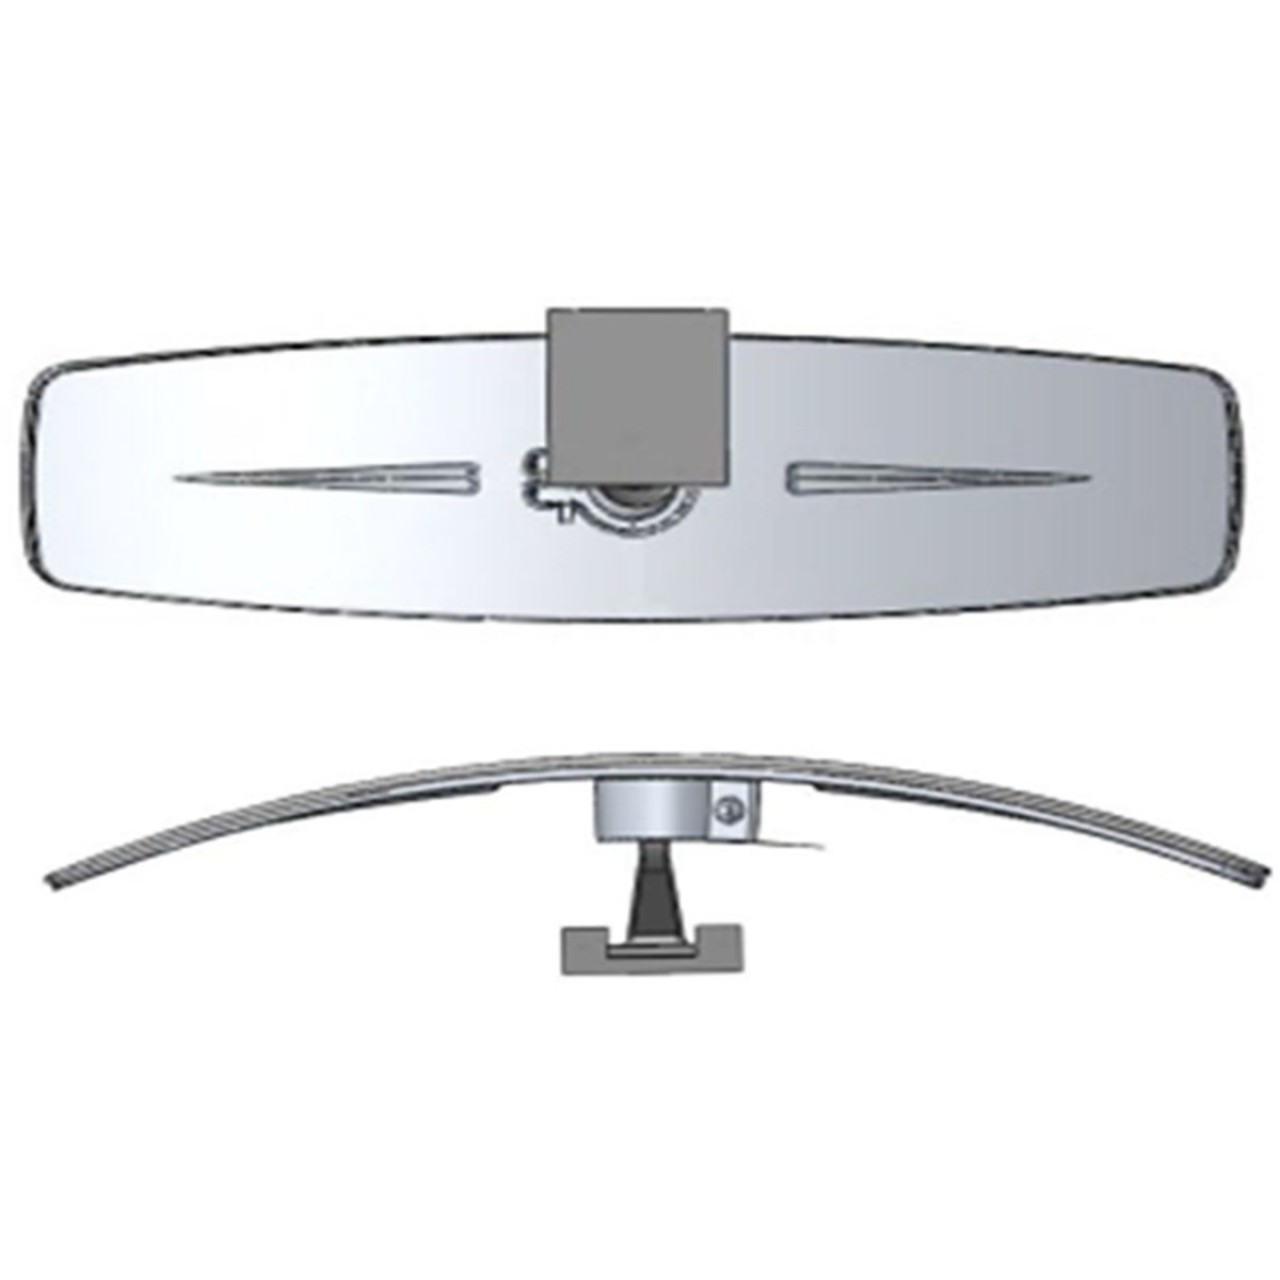 Ha-va Eğik Kollu Yaldızlı Universal İç Dikiz Aynası r320 290x85 mm